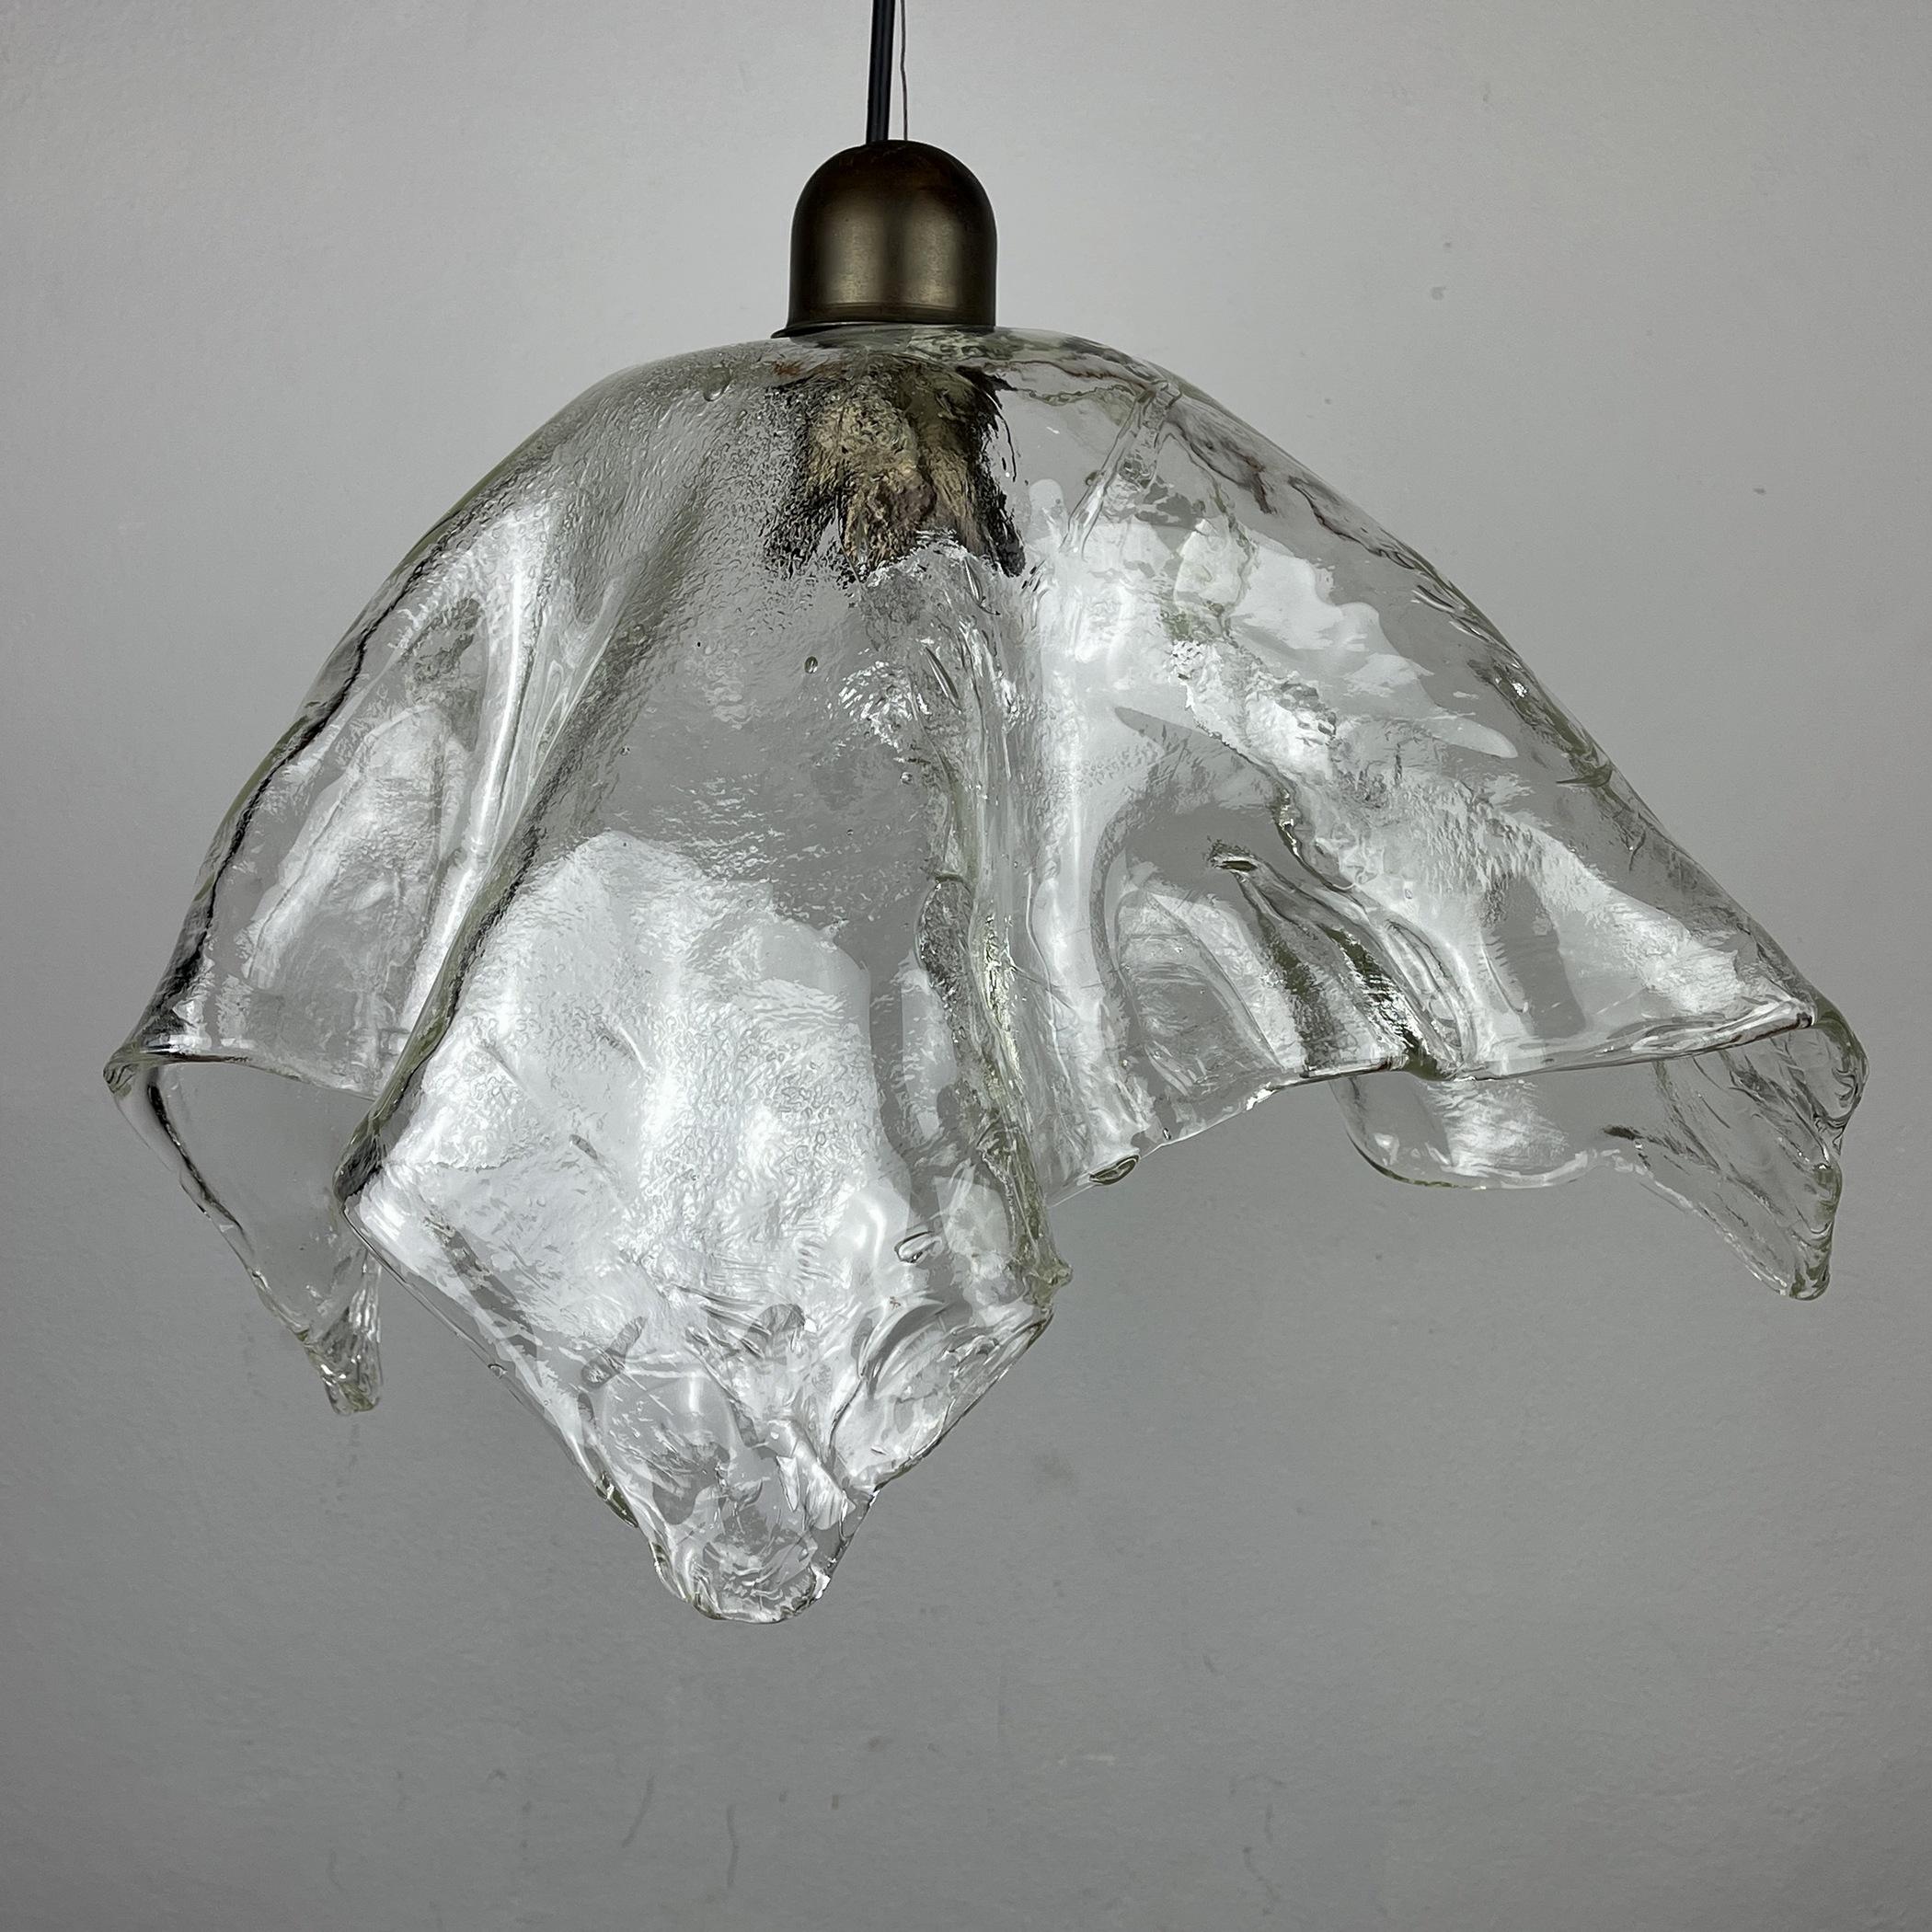 Original Murano Glass Pendant Lamp Fazzoletto by AV Mazzega Italy 1950s For Sale 6